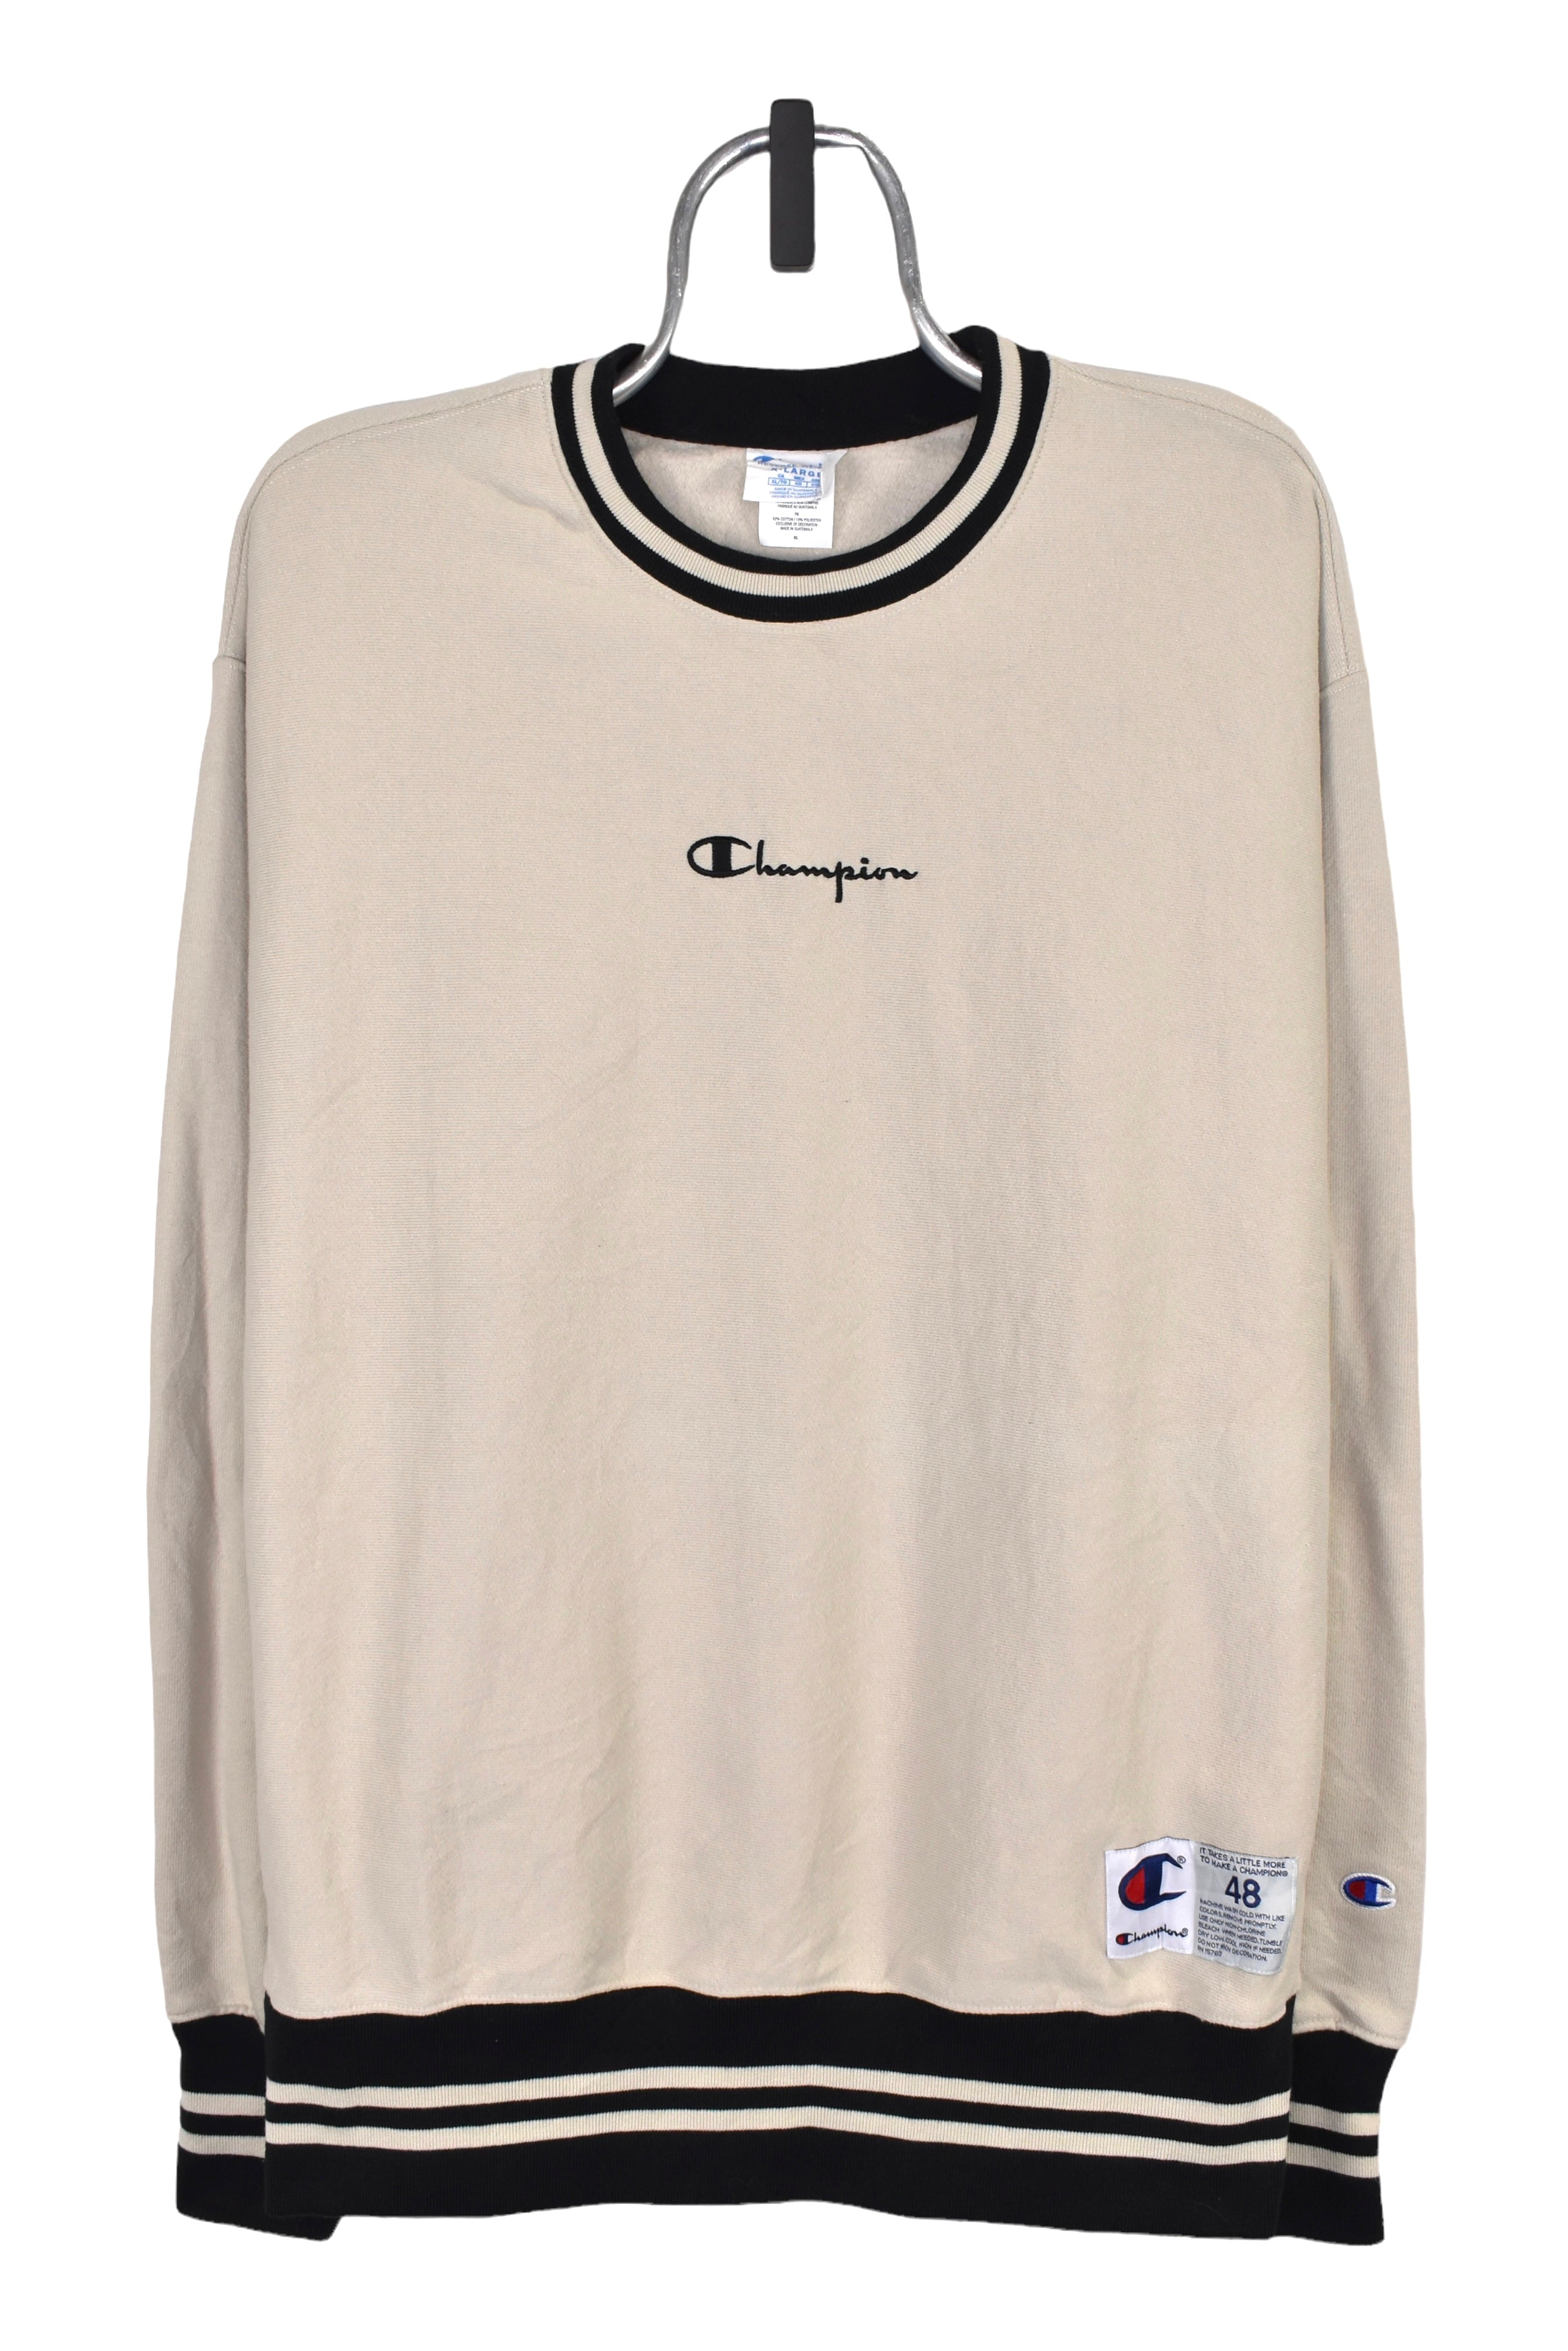 Modern Champion sweatshirt (XXL), beige embroidered crewneck